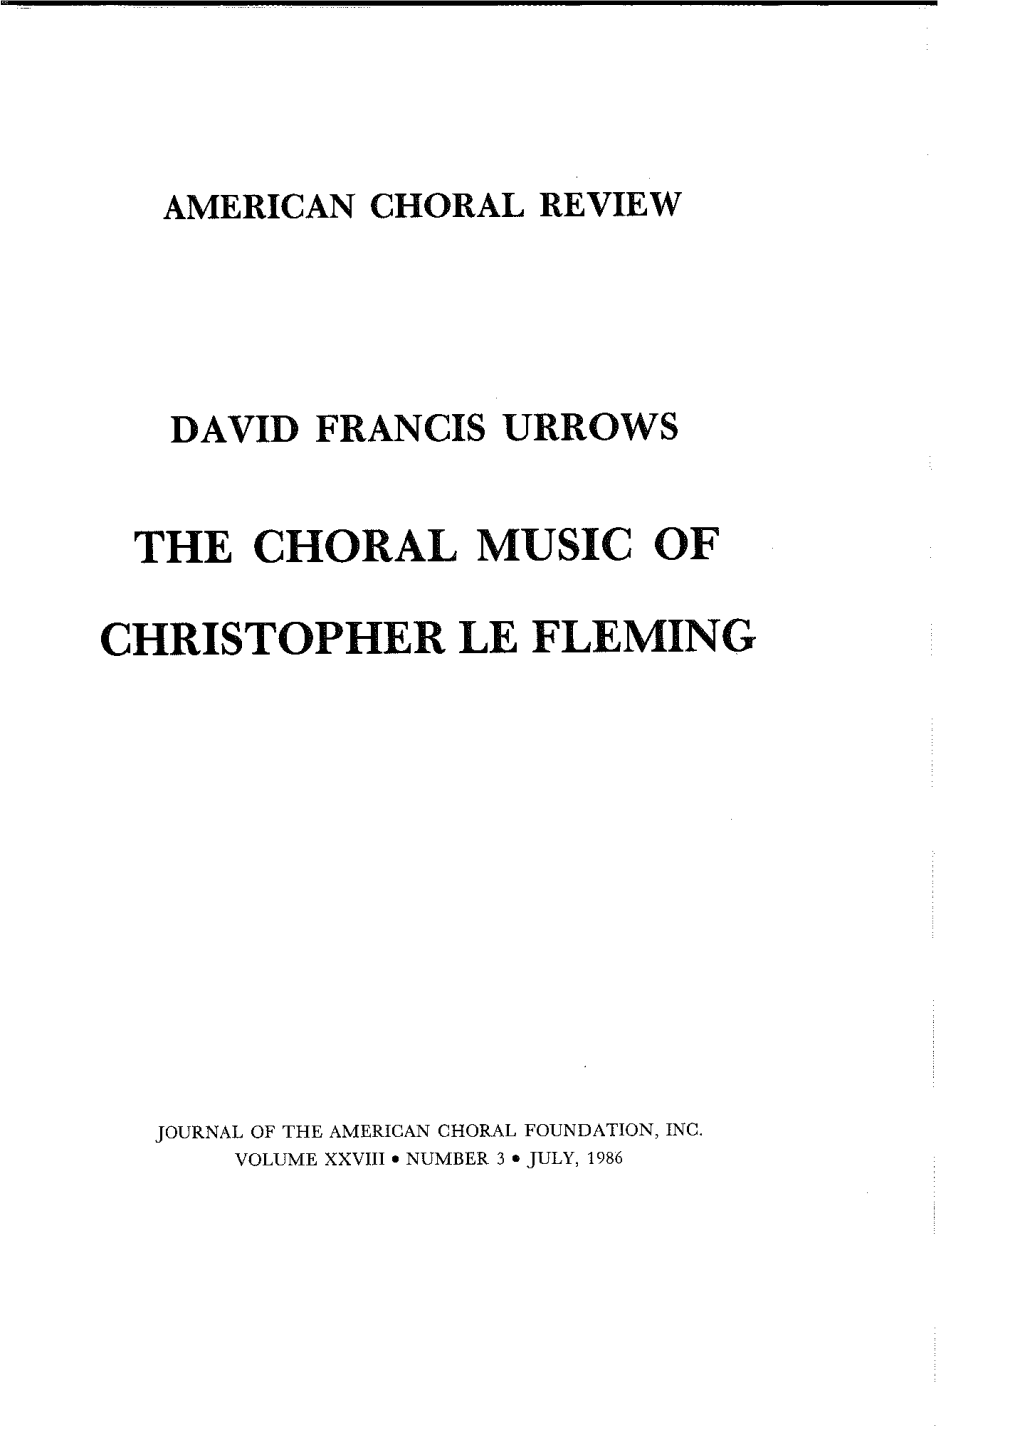 David Francis Urrows